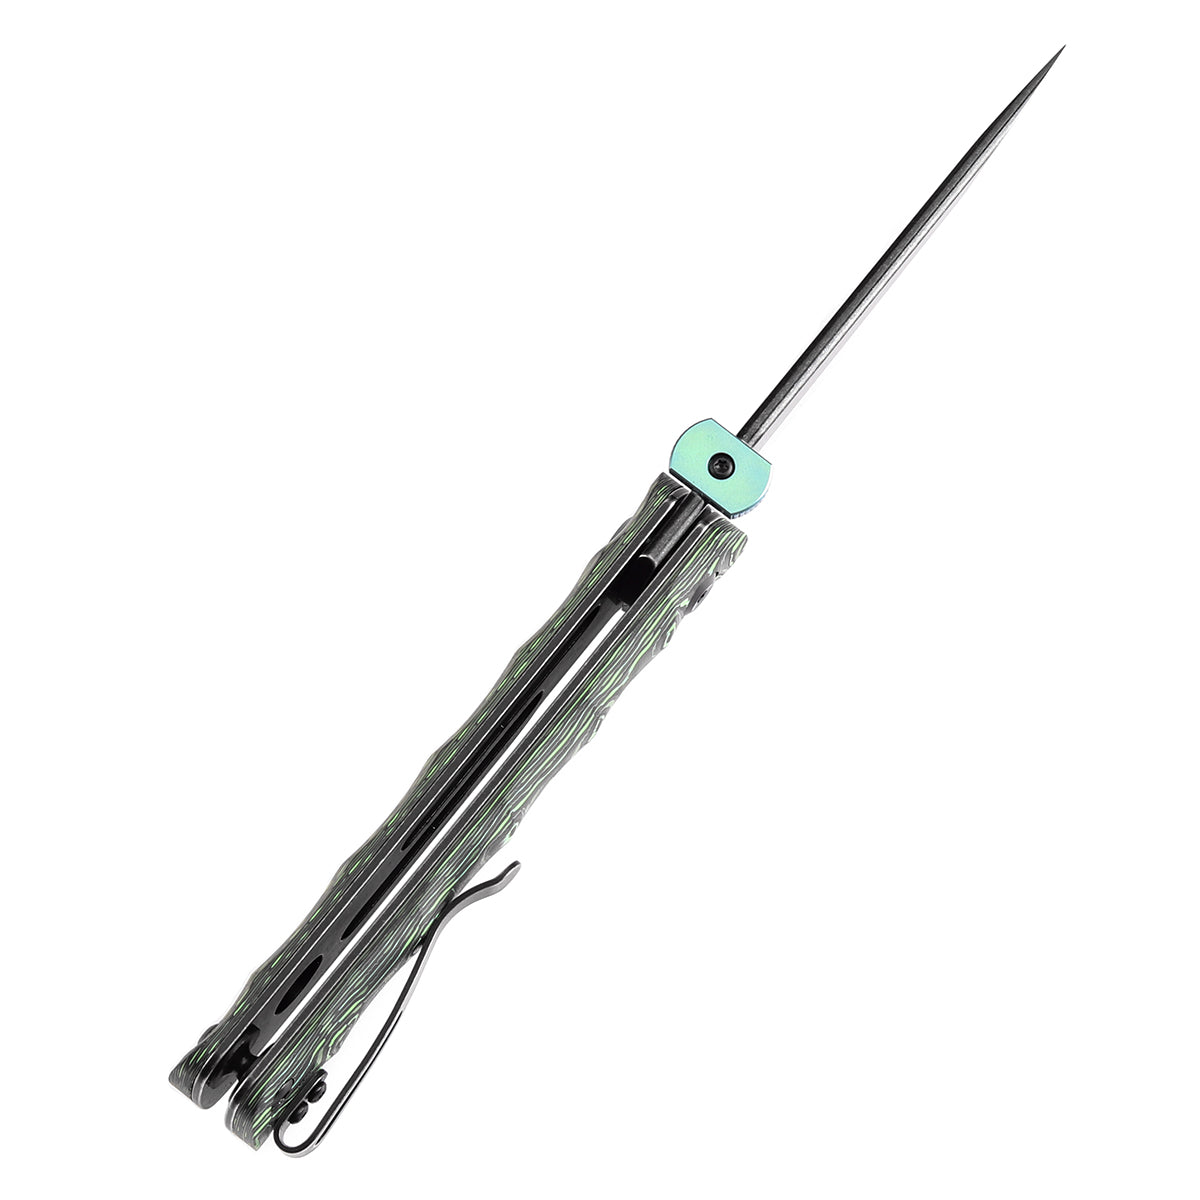 Kansept BTF K1064A2 CPM-S35VN Blade Grass Green Carbon Fiber Handle Edc Flipper Knife